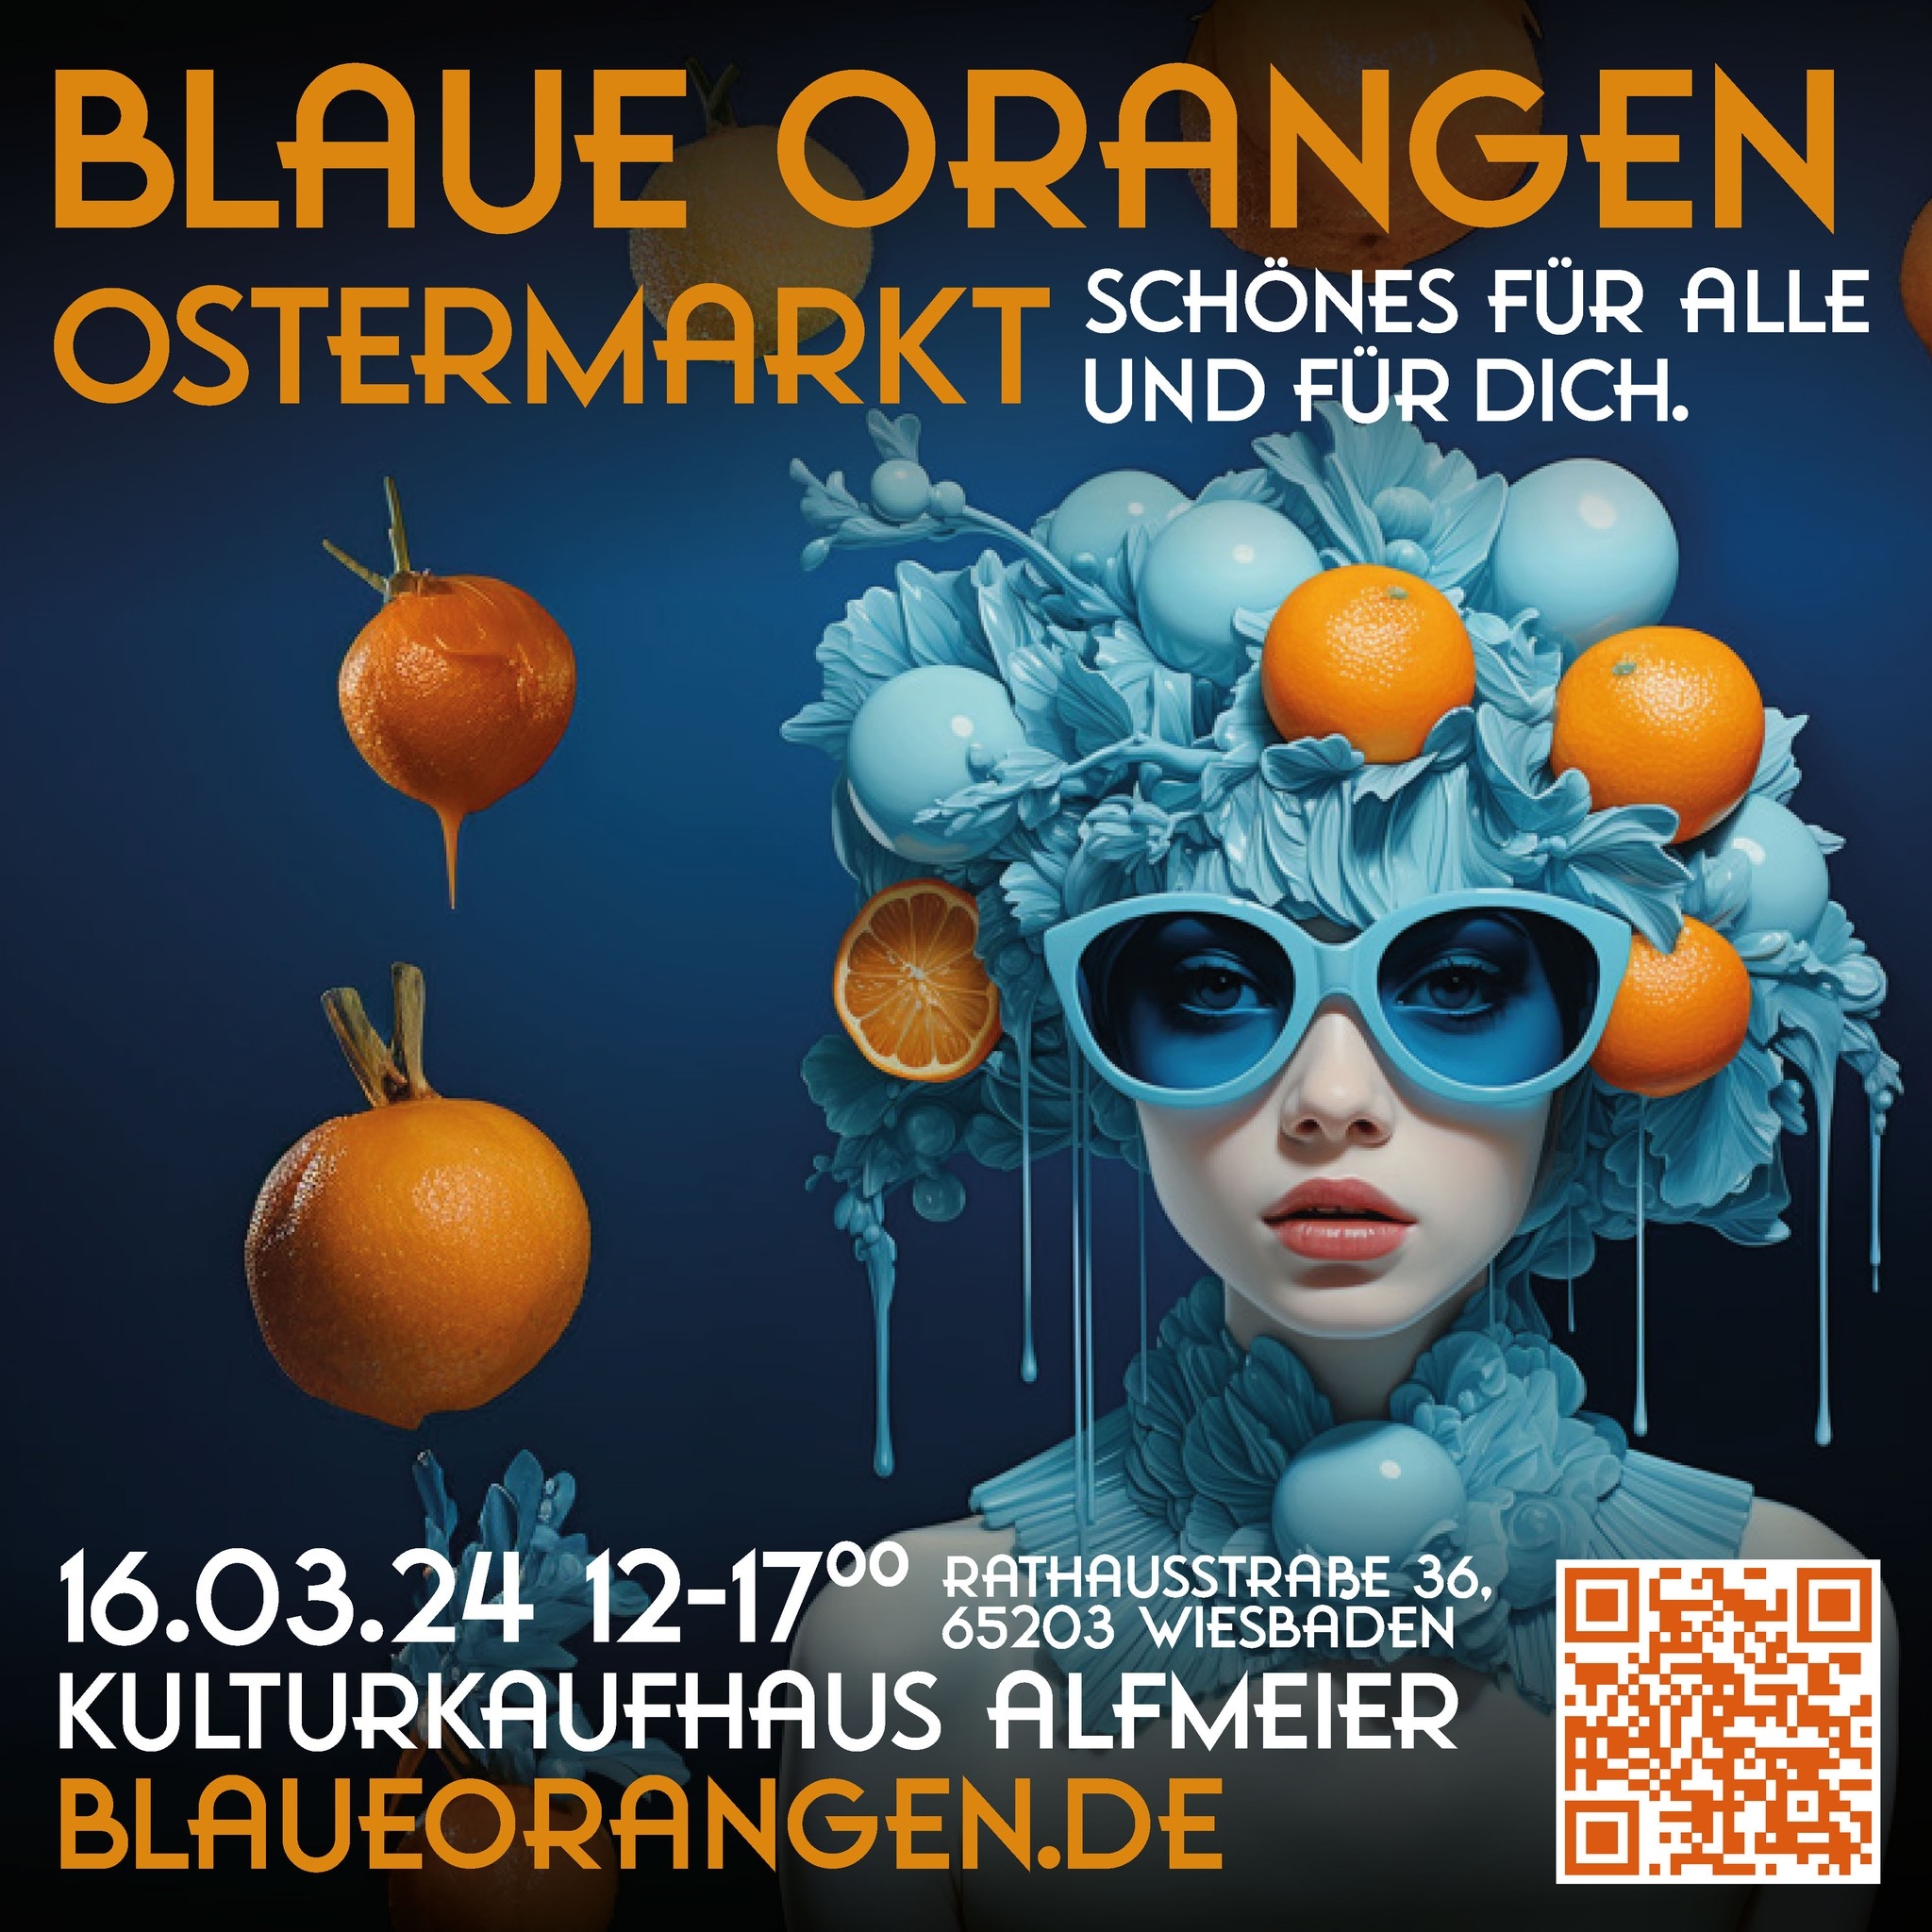 You are currently viewing Blaue Orangen in Wiesbaden!